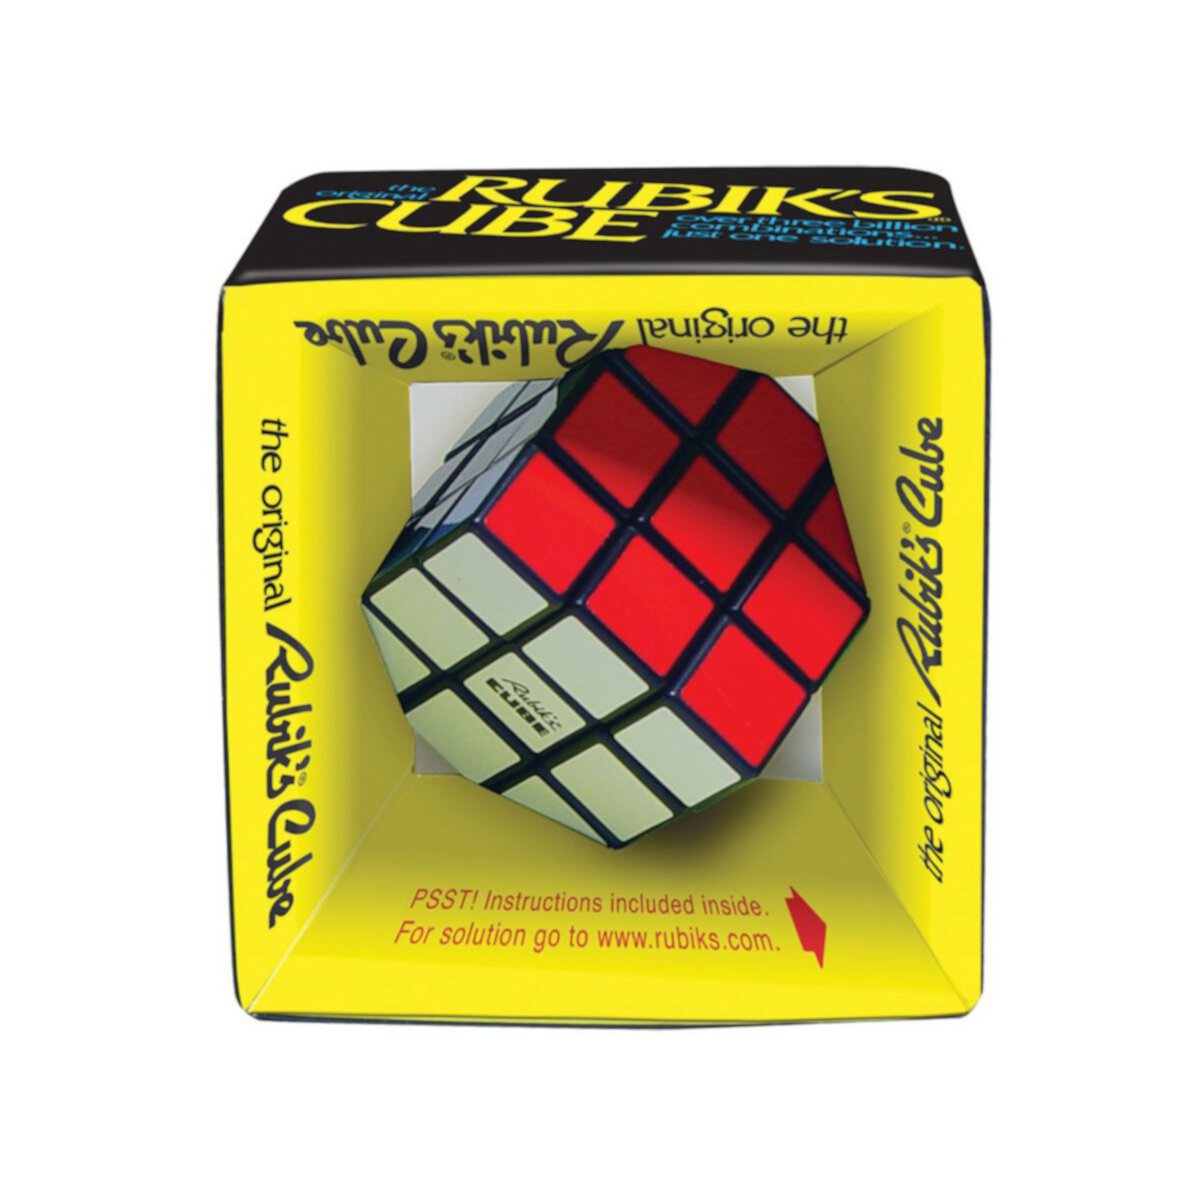 Победные ходы оригинального кубика Рубика Winning Moves